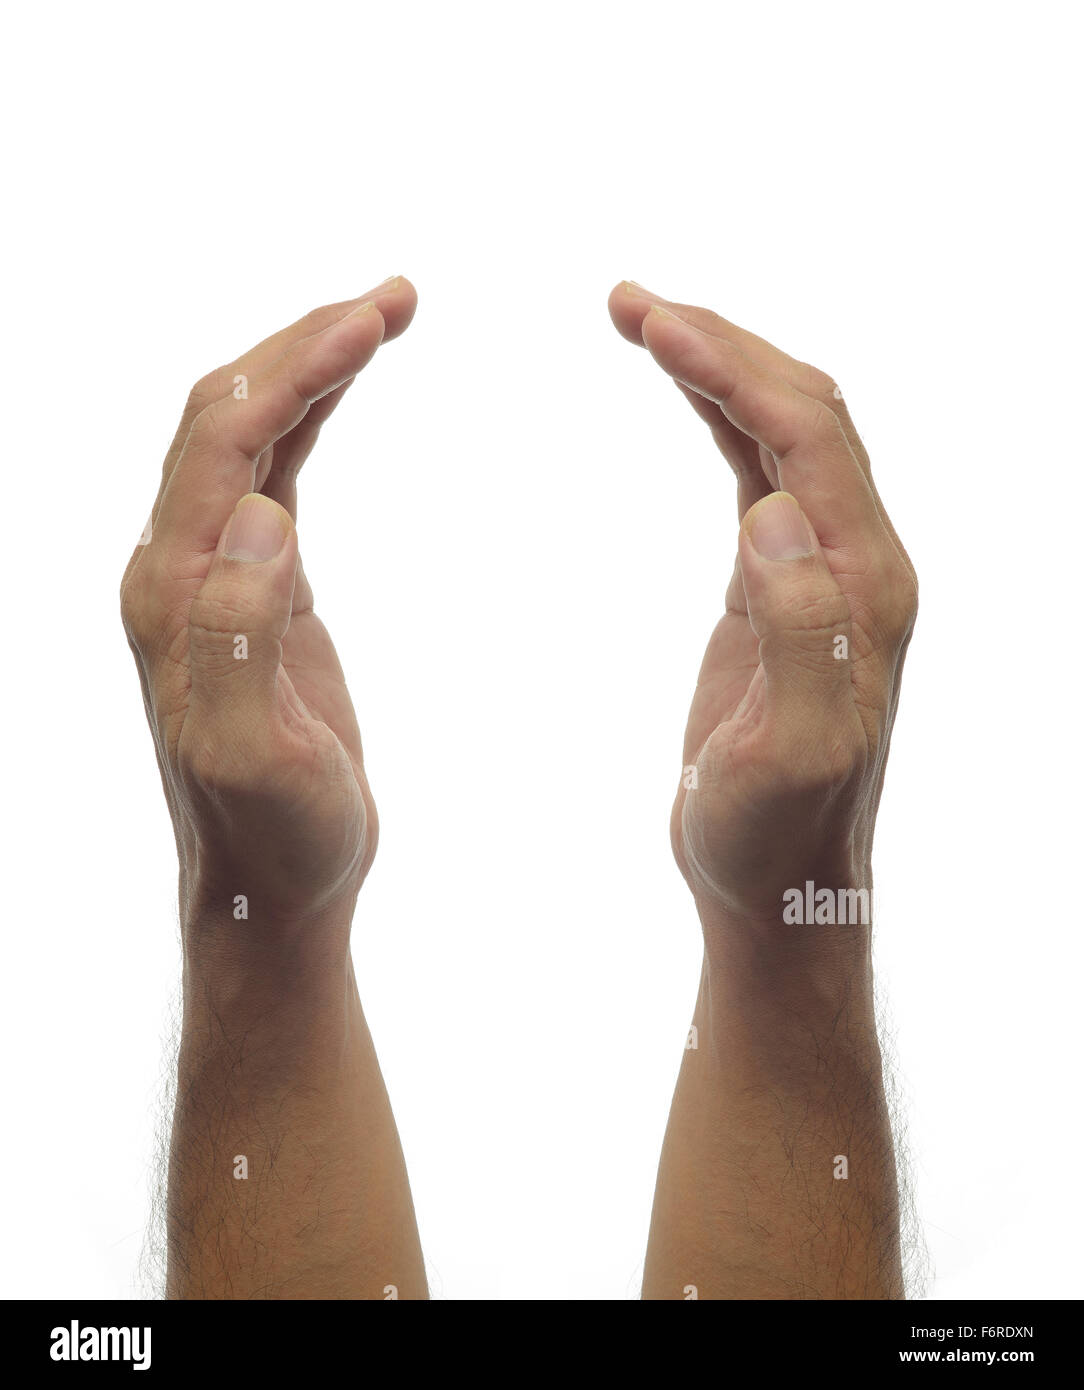 Menschliche Hände - Schutz-Geste auf weißem Hintergrund Stockfoto